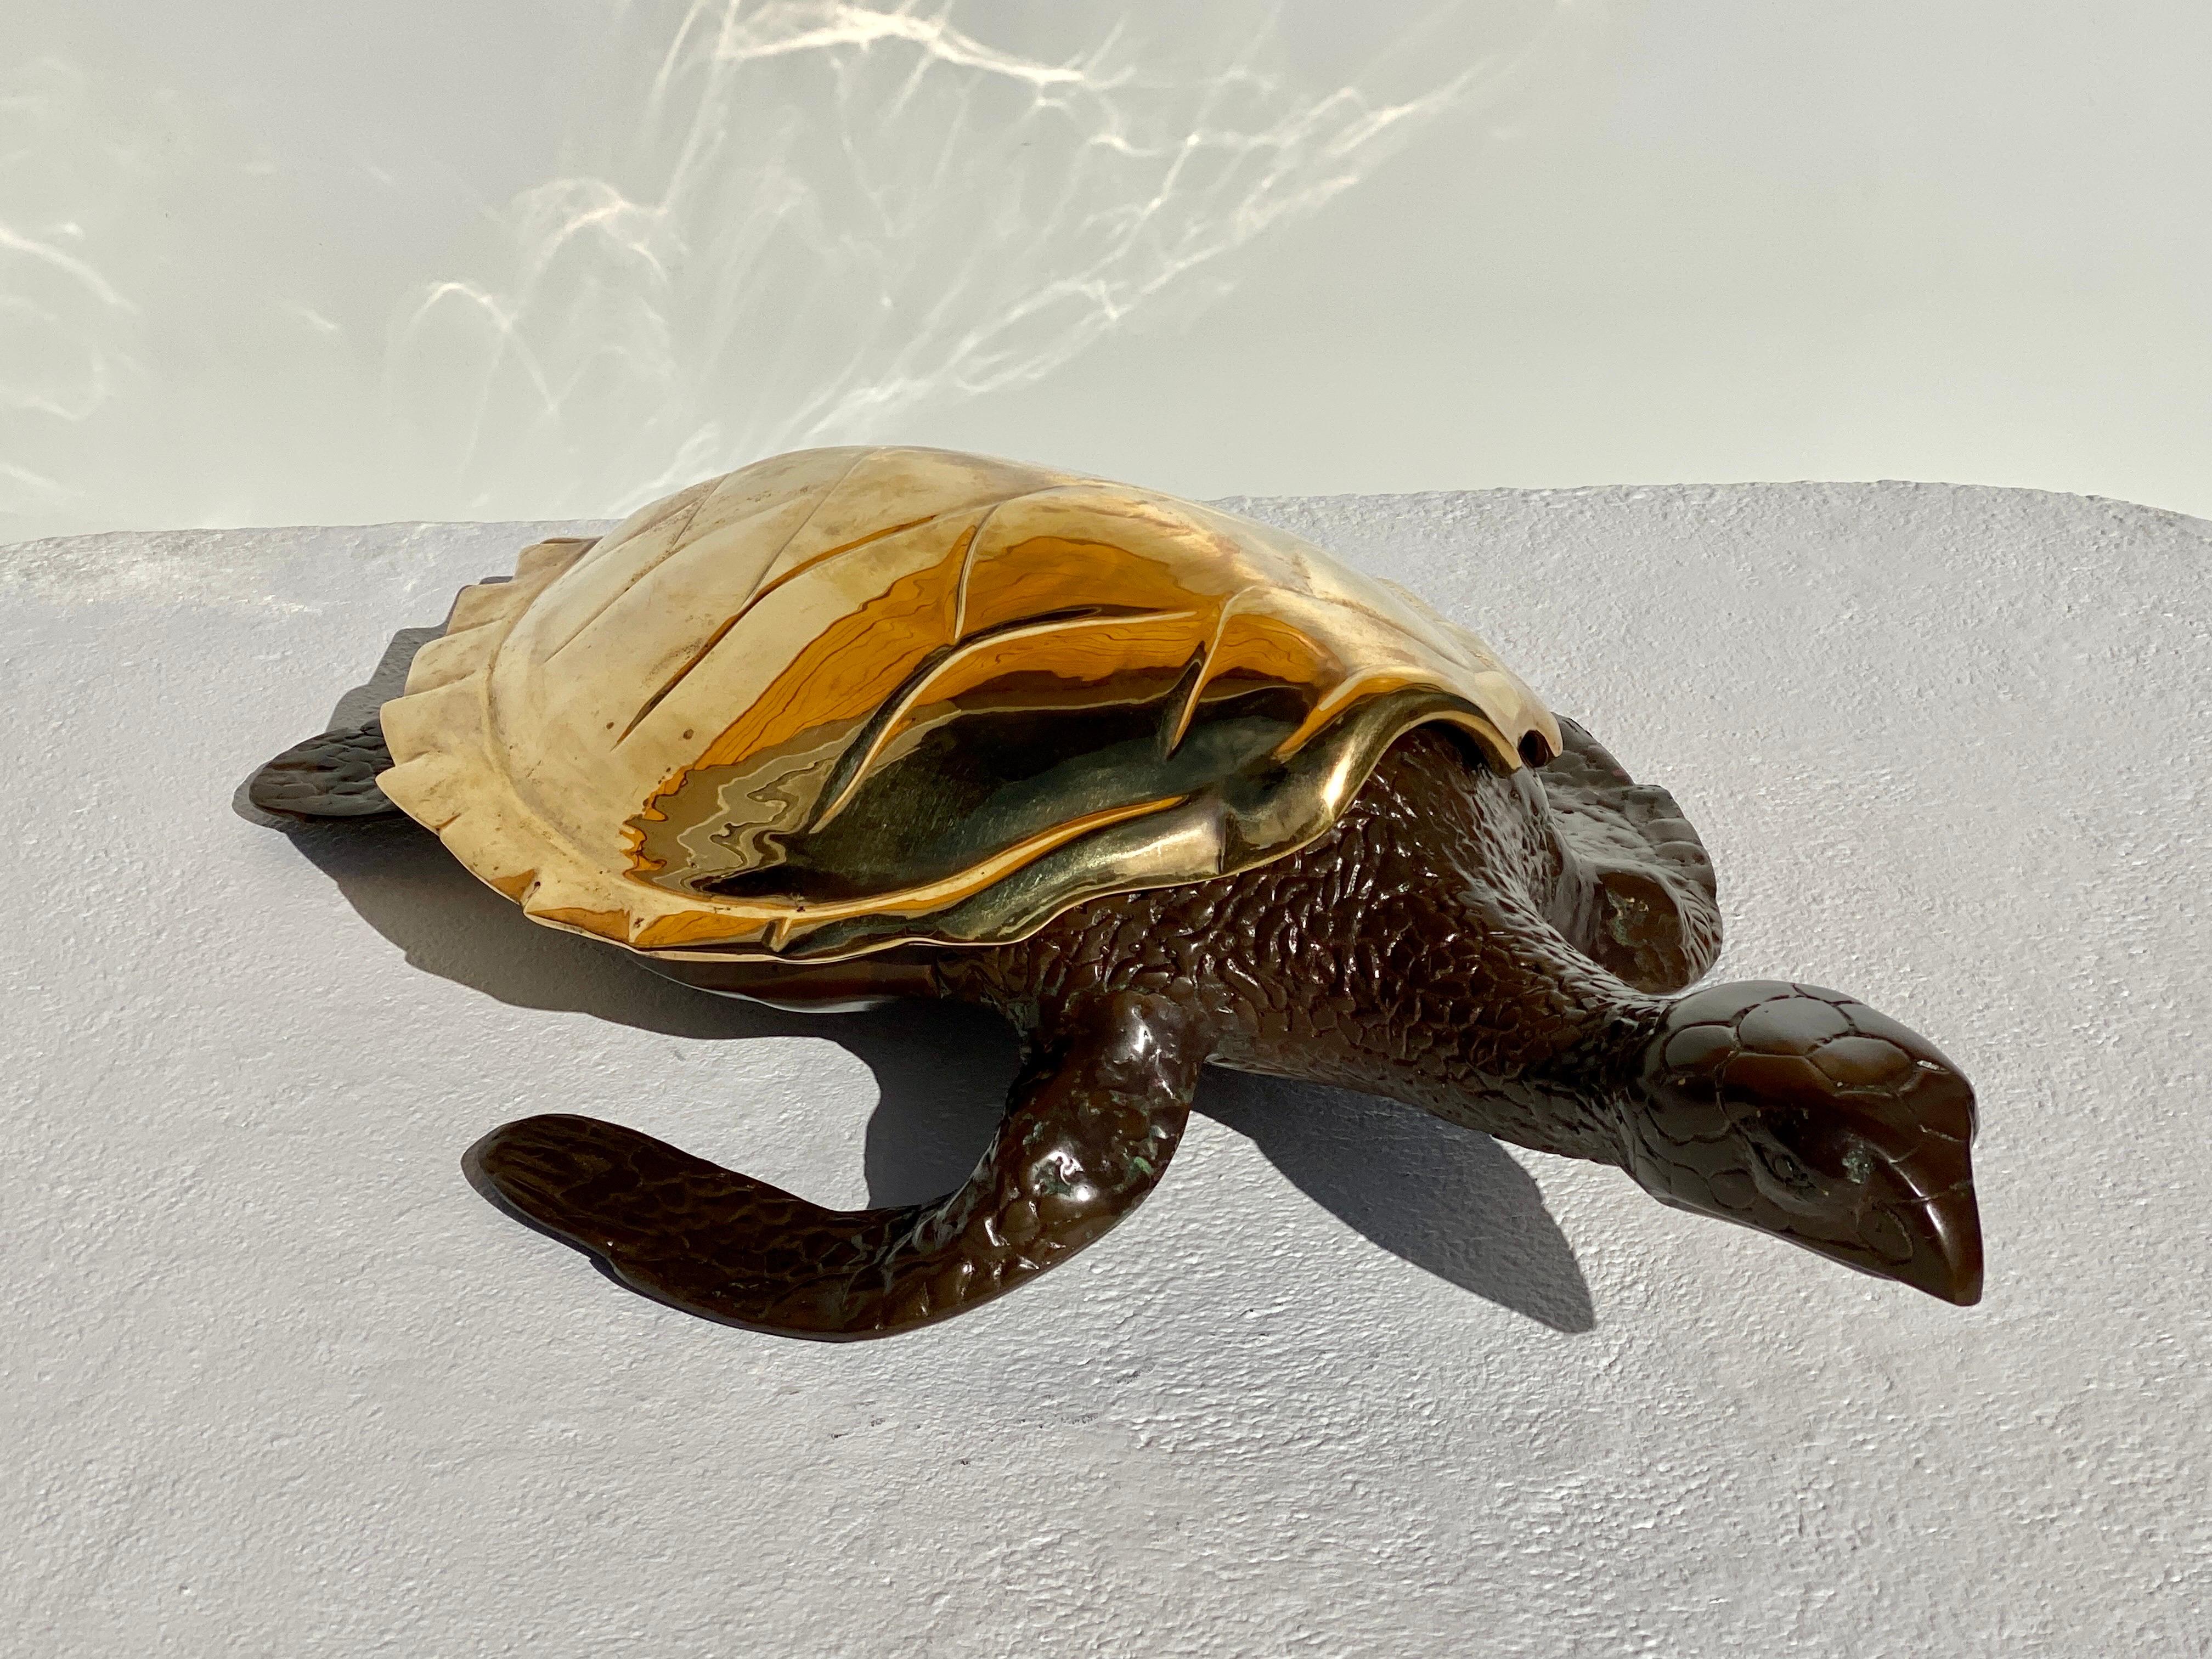 Grande sculpture de tortue de mer en laiton / boîte décorative / attrape-tout.
La coque est en laiton poli et le reste du corps est en finition patinée.
Nous avons également une taille plus petite dans notre autre liste LU985031284932.